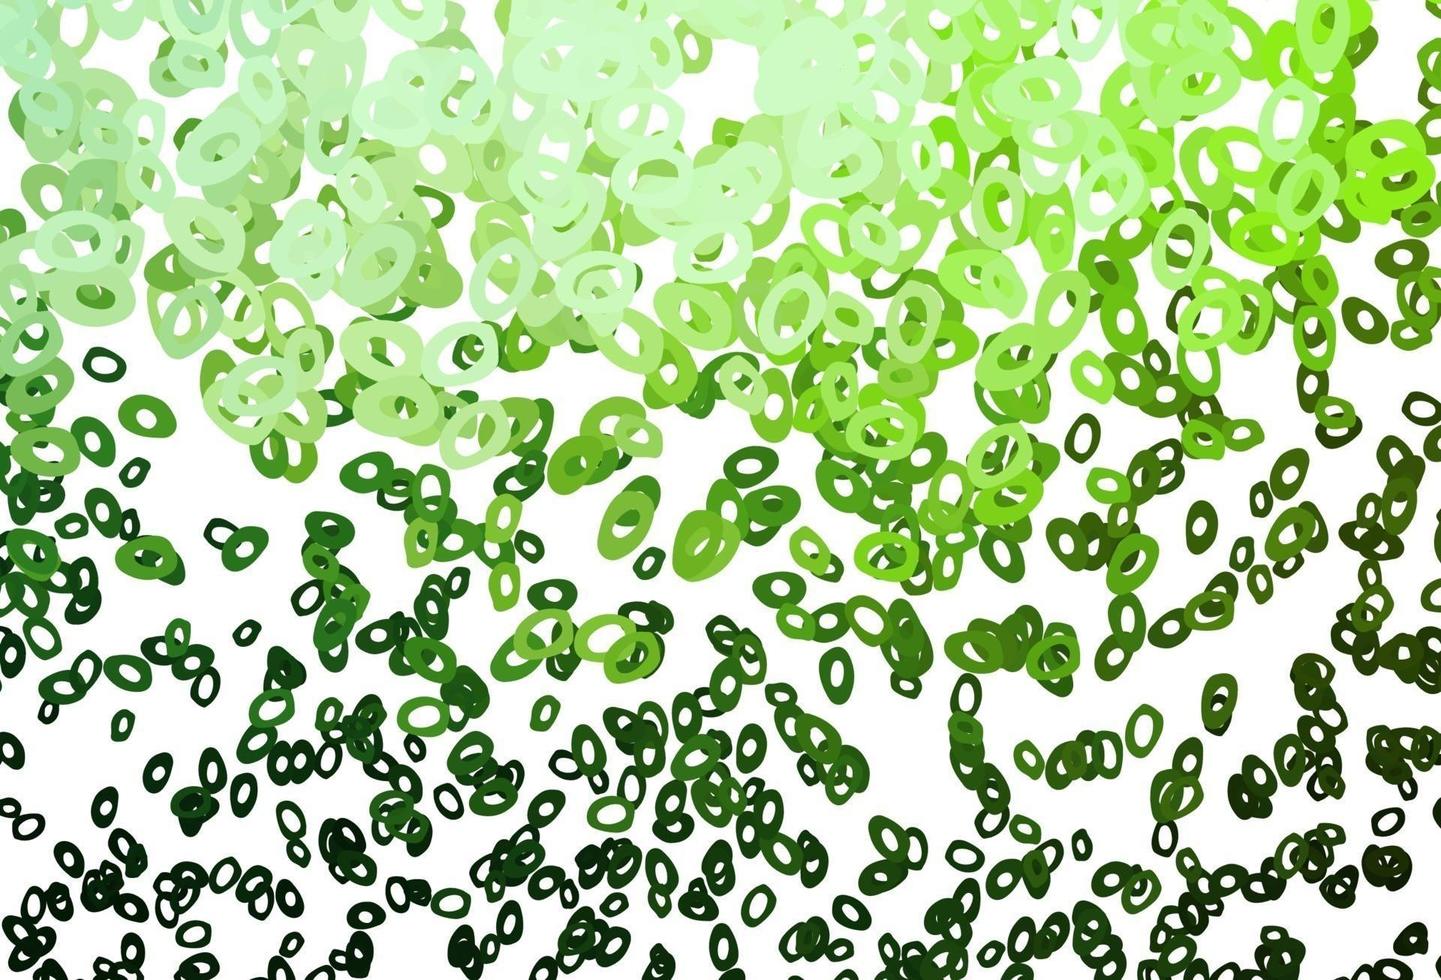 layout vettoriale verde chiaro con forme circolari.